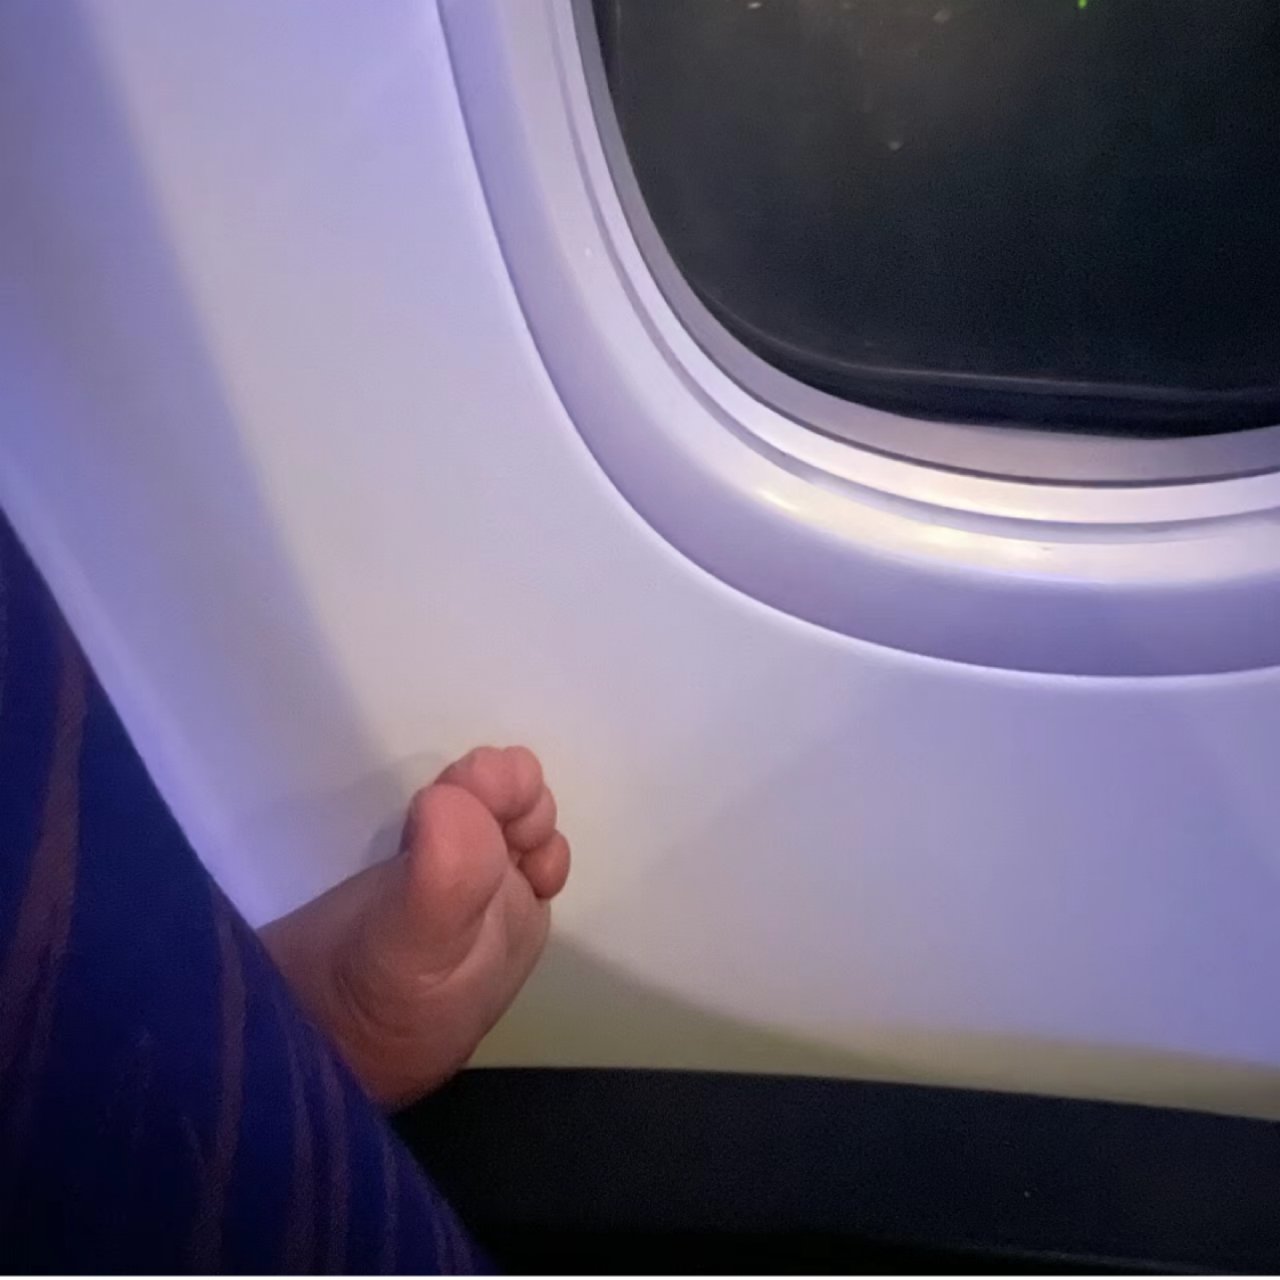 大家在飞机上遇到这种事怎么办？...